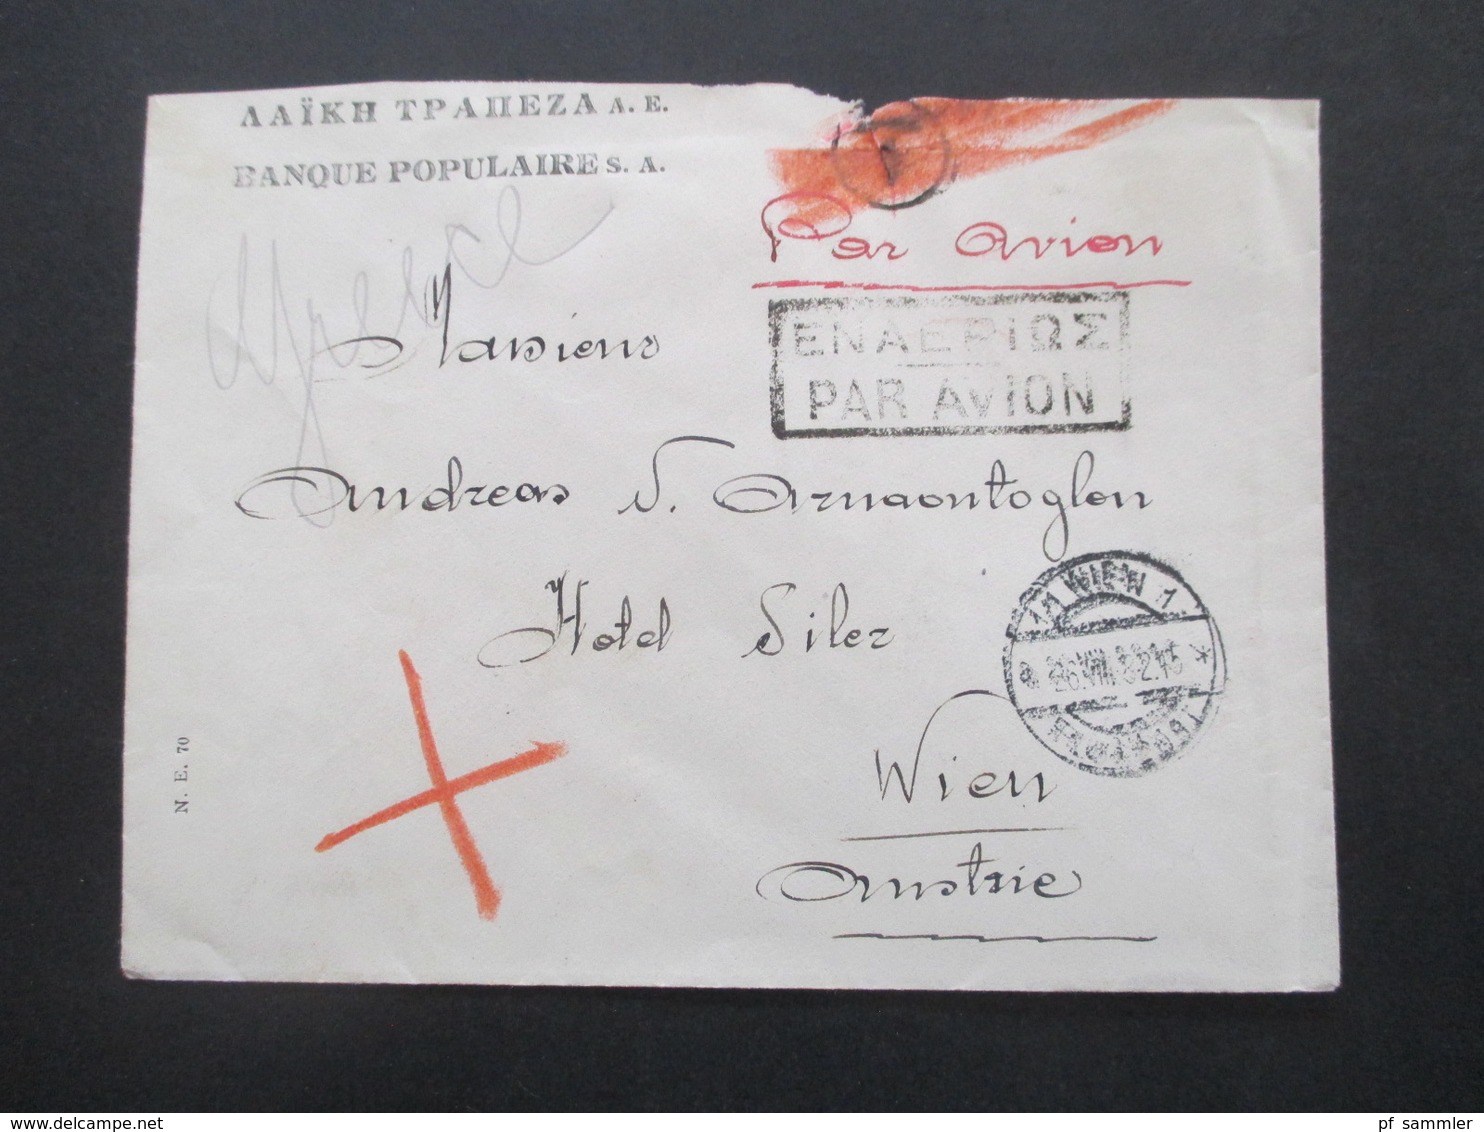 Griechenland 1932 Par Avion Luftpost Banque Populaires Nach Wien Mit Ank. Stempel Rücks. Nr. 350 (4) MeF - Briefe U. Dokumente